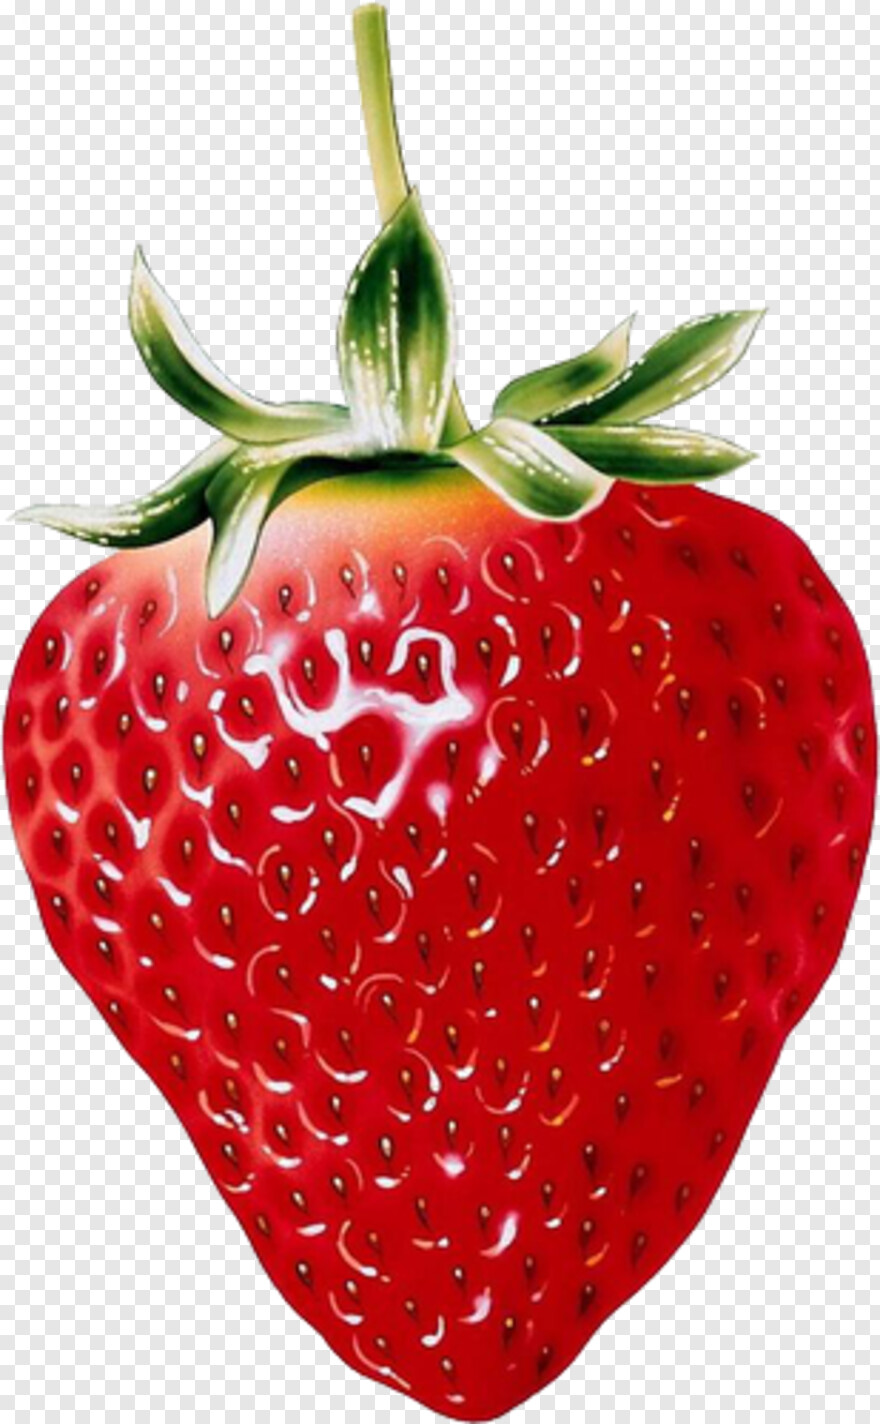 strawberry-shortcake # 427772